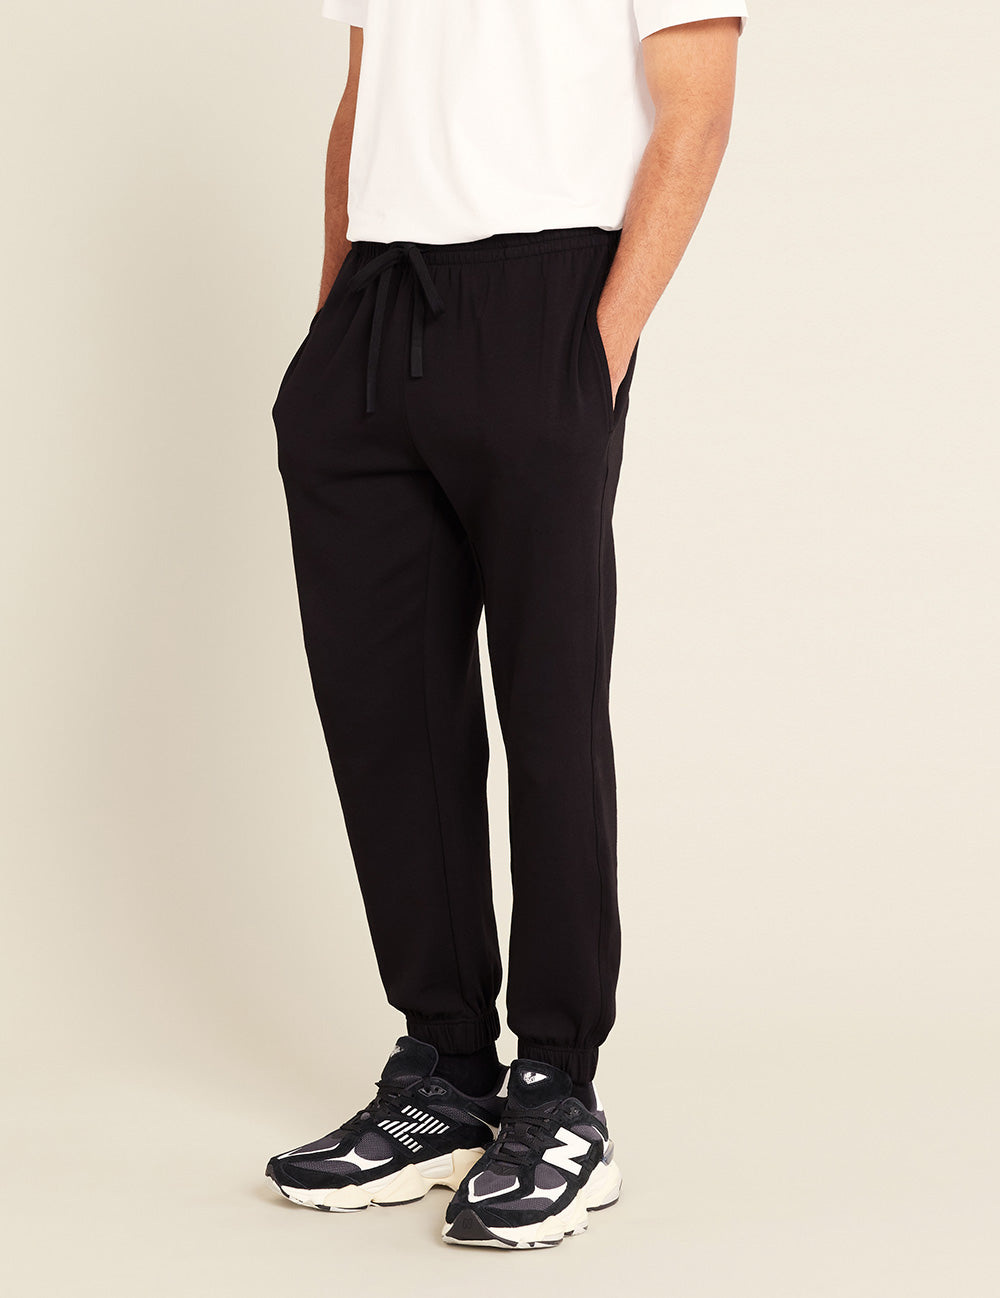 Unisex Cuffed Sweat Pants | Black | Bamboo Clothing – Boody USA